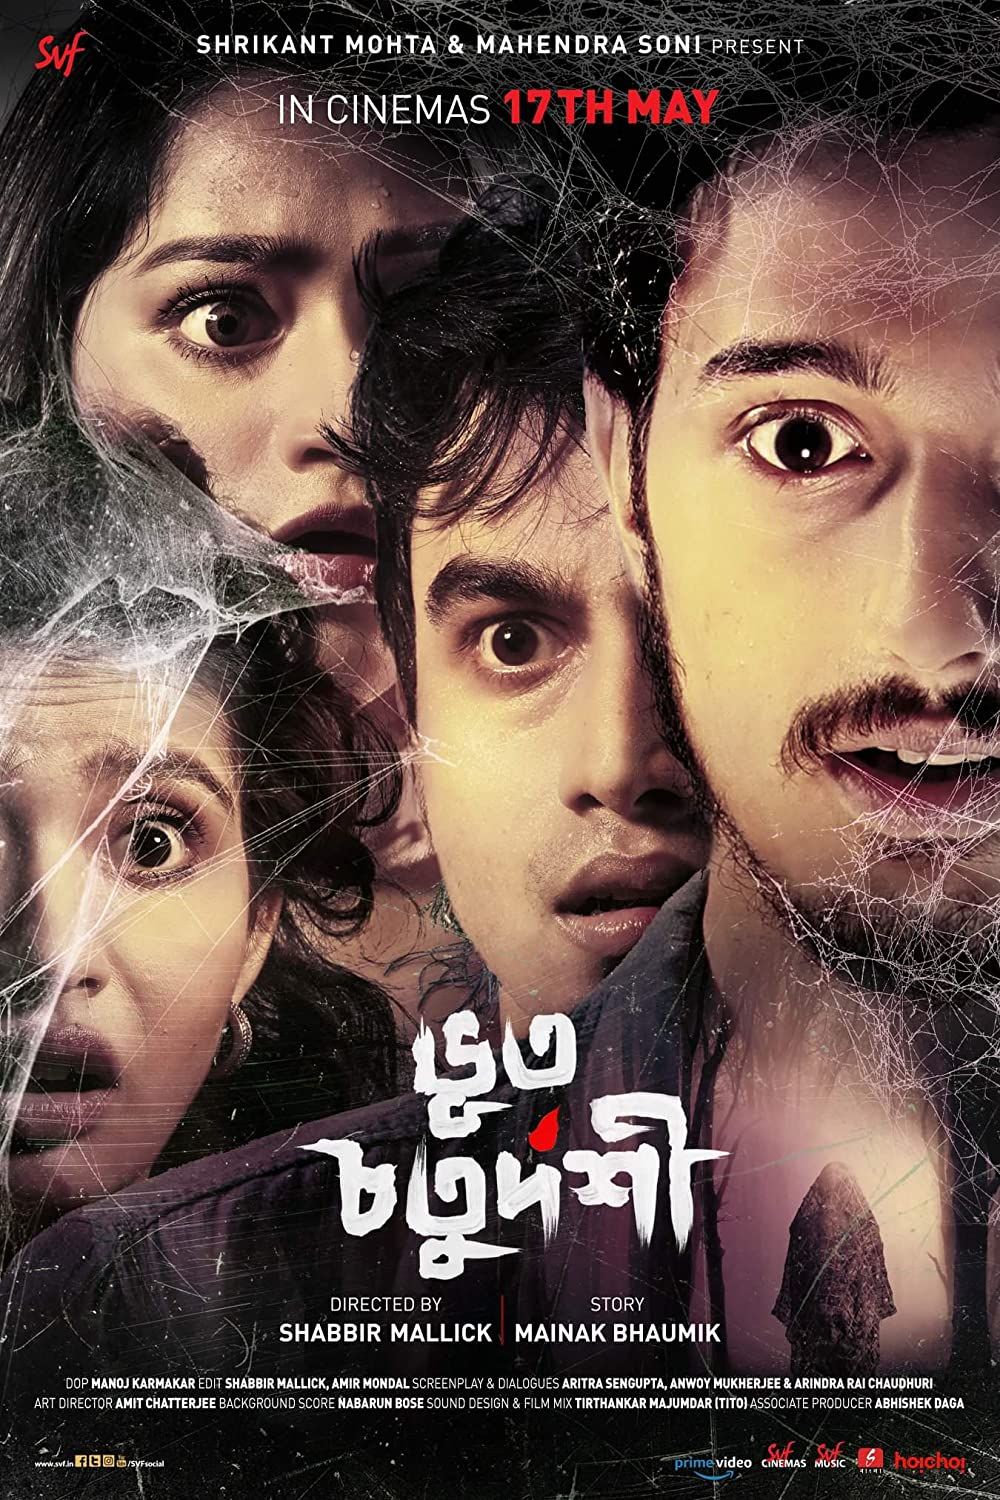 Bhoot Chaturdashi (2019) Bengali HDRip download full movie